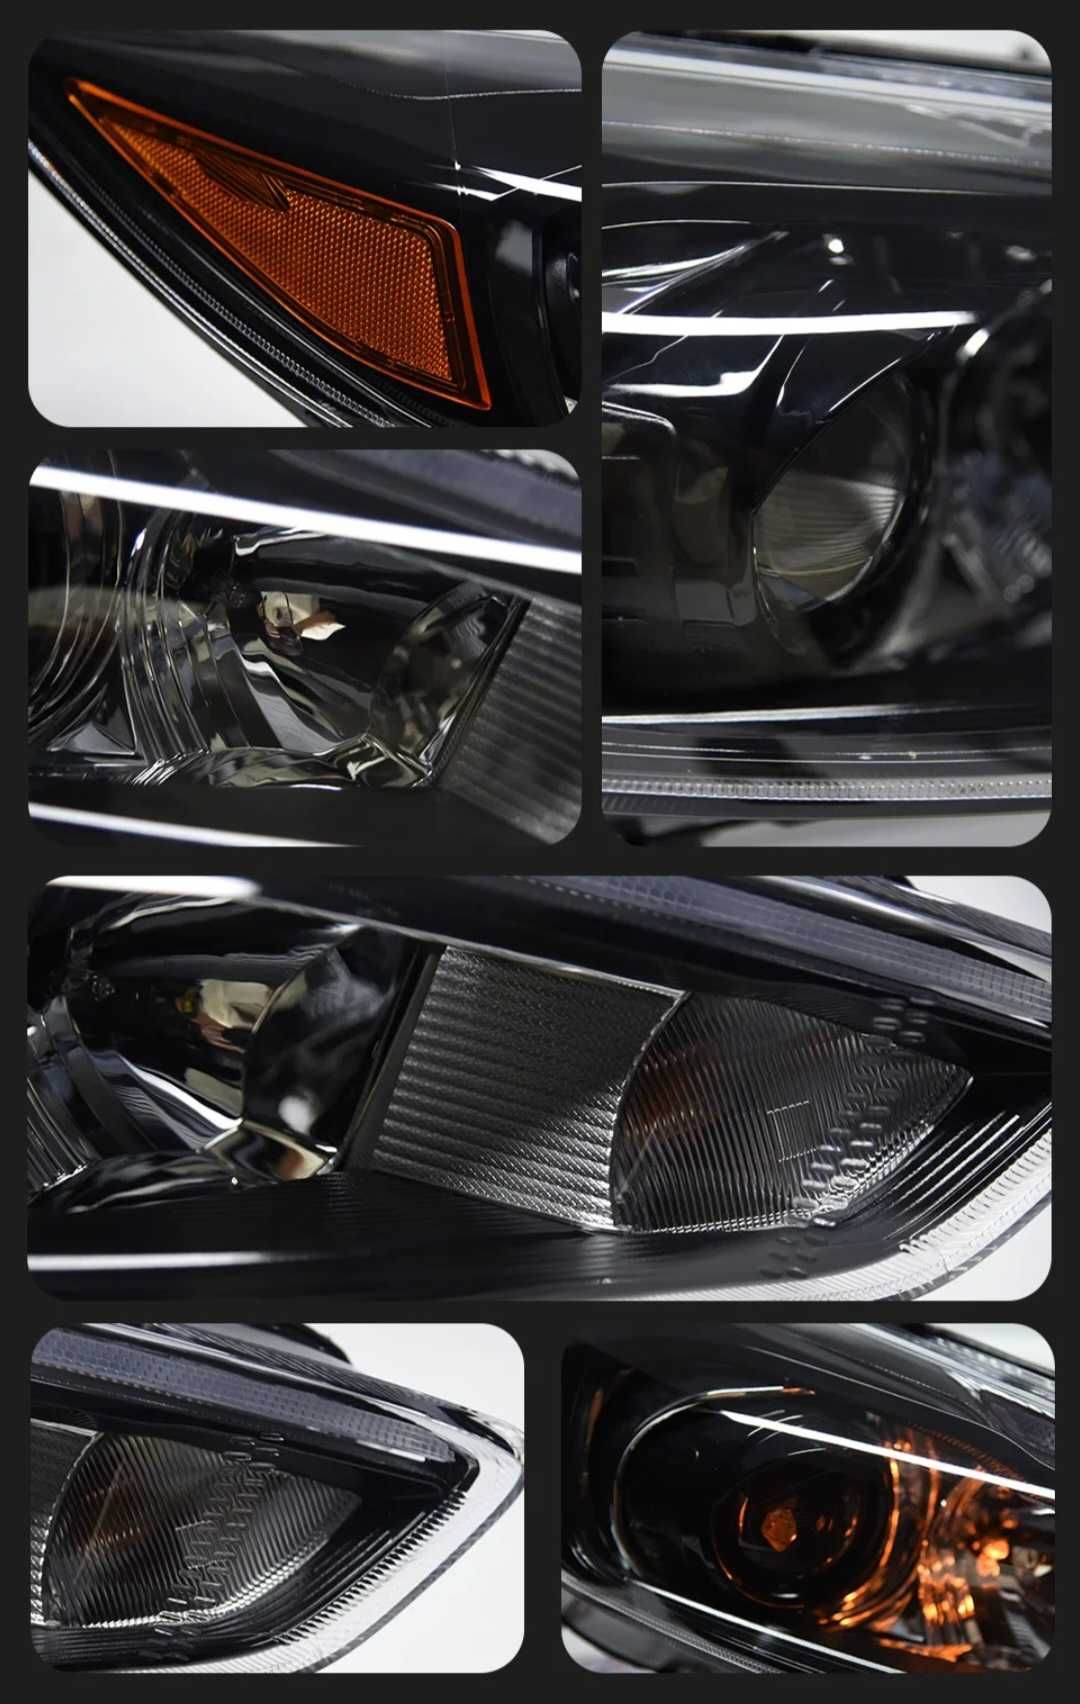 NOWE lampy przednie lampa przód Ford Focus 2014 - 2019